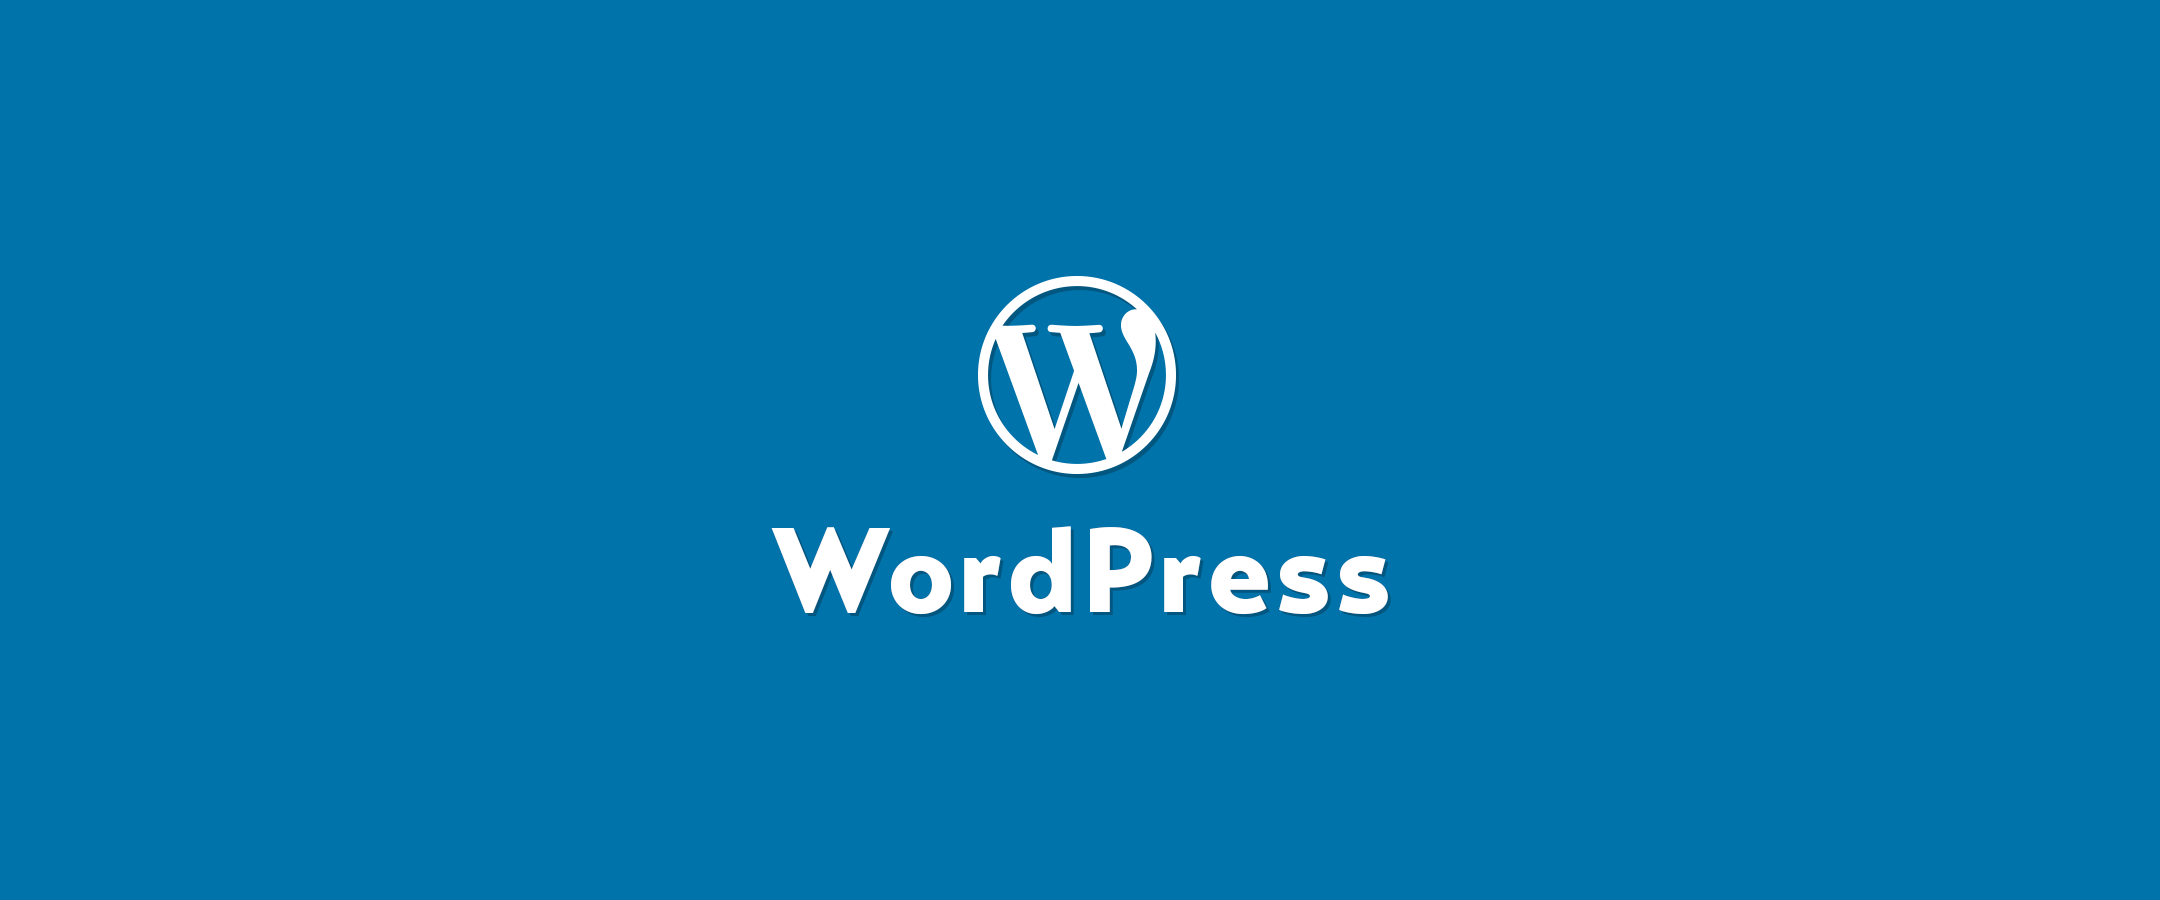 【WordPress】wp-cronを止めてサイトのパフォーマンスを改善してみる